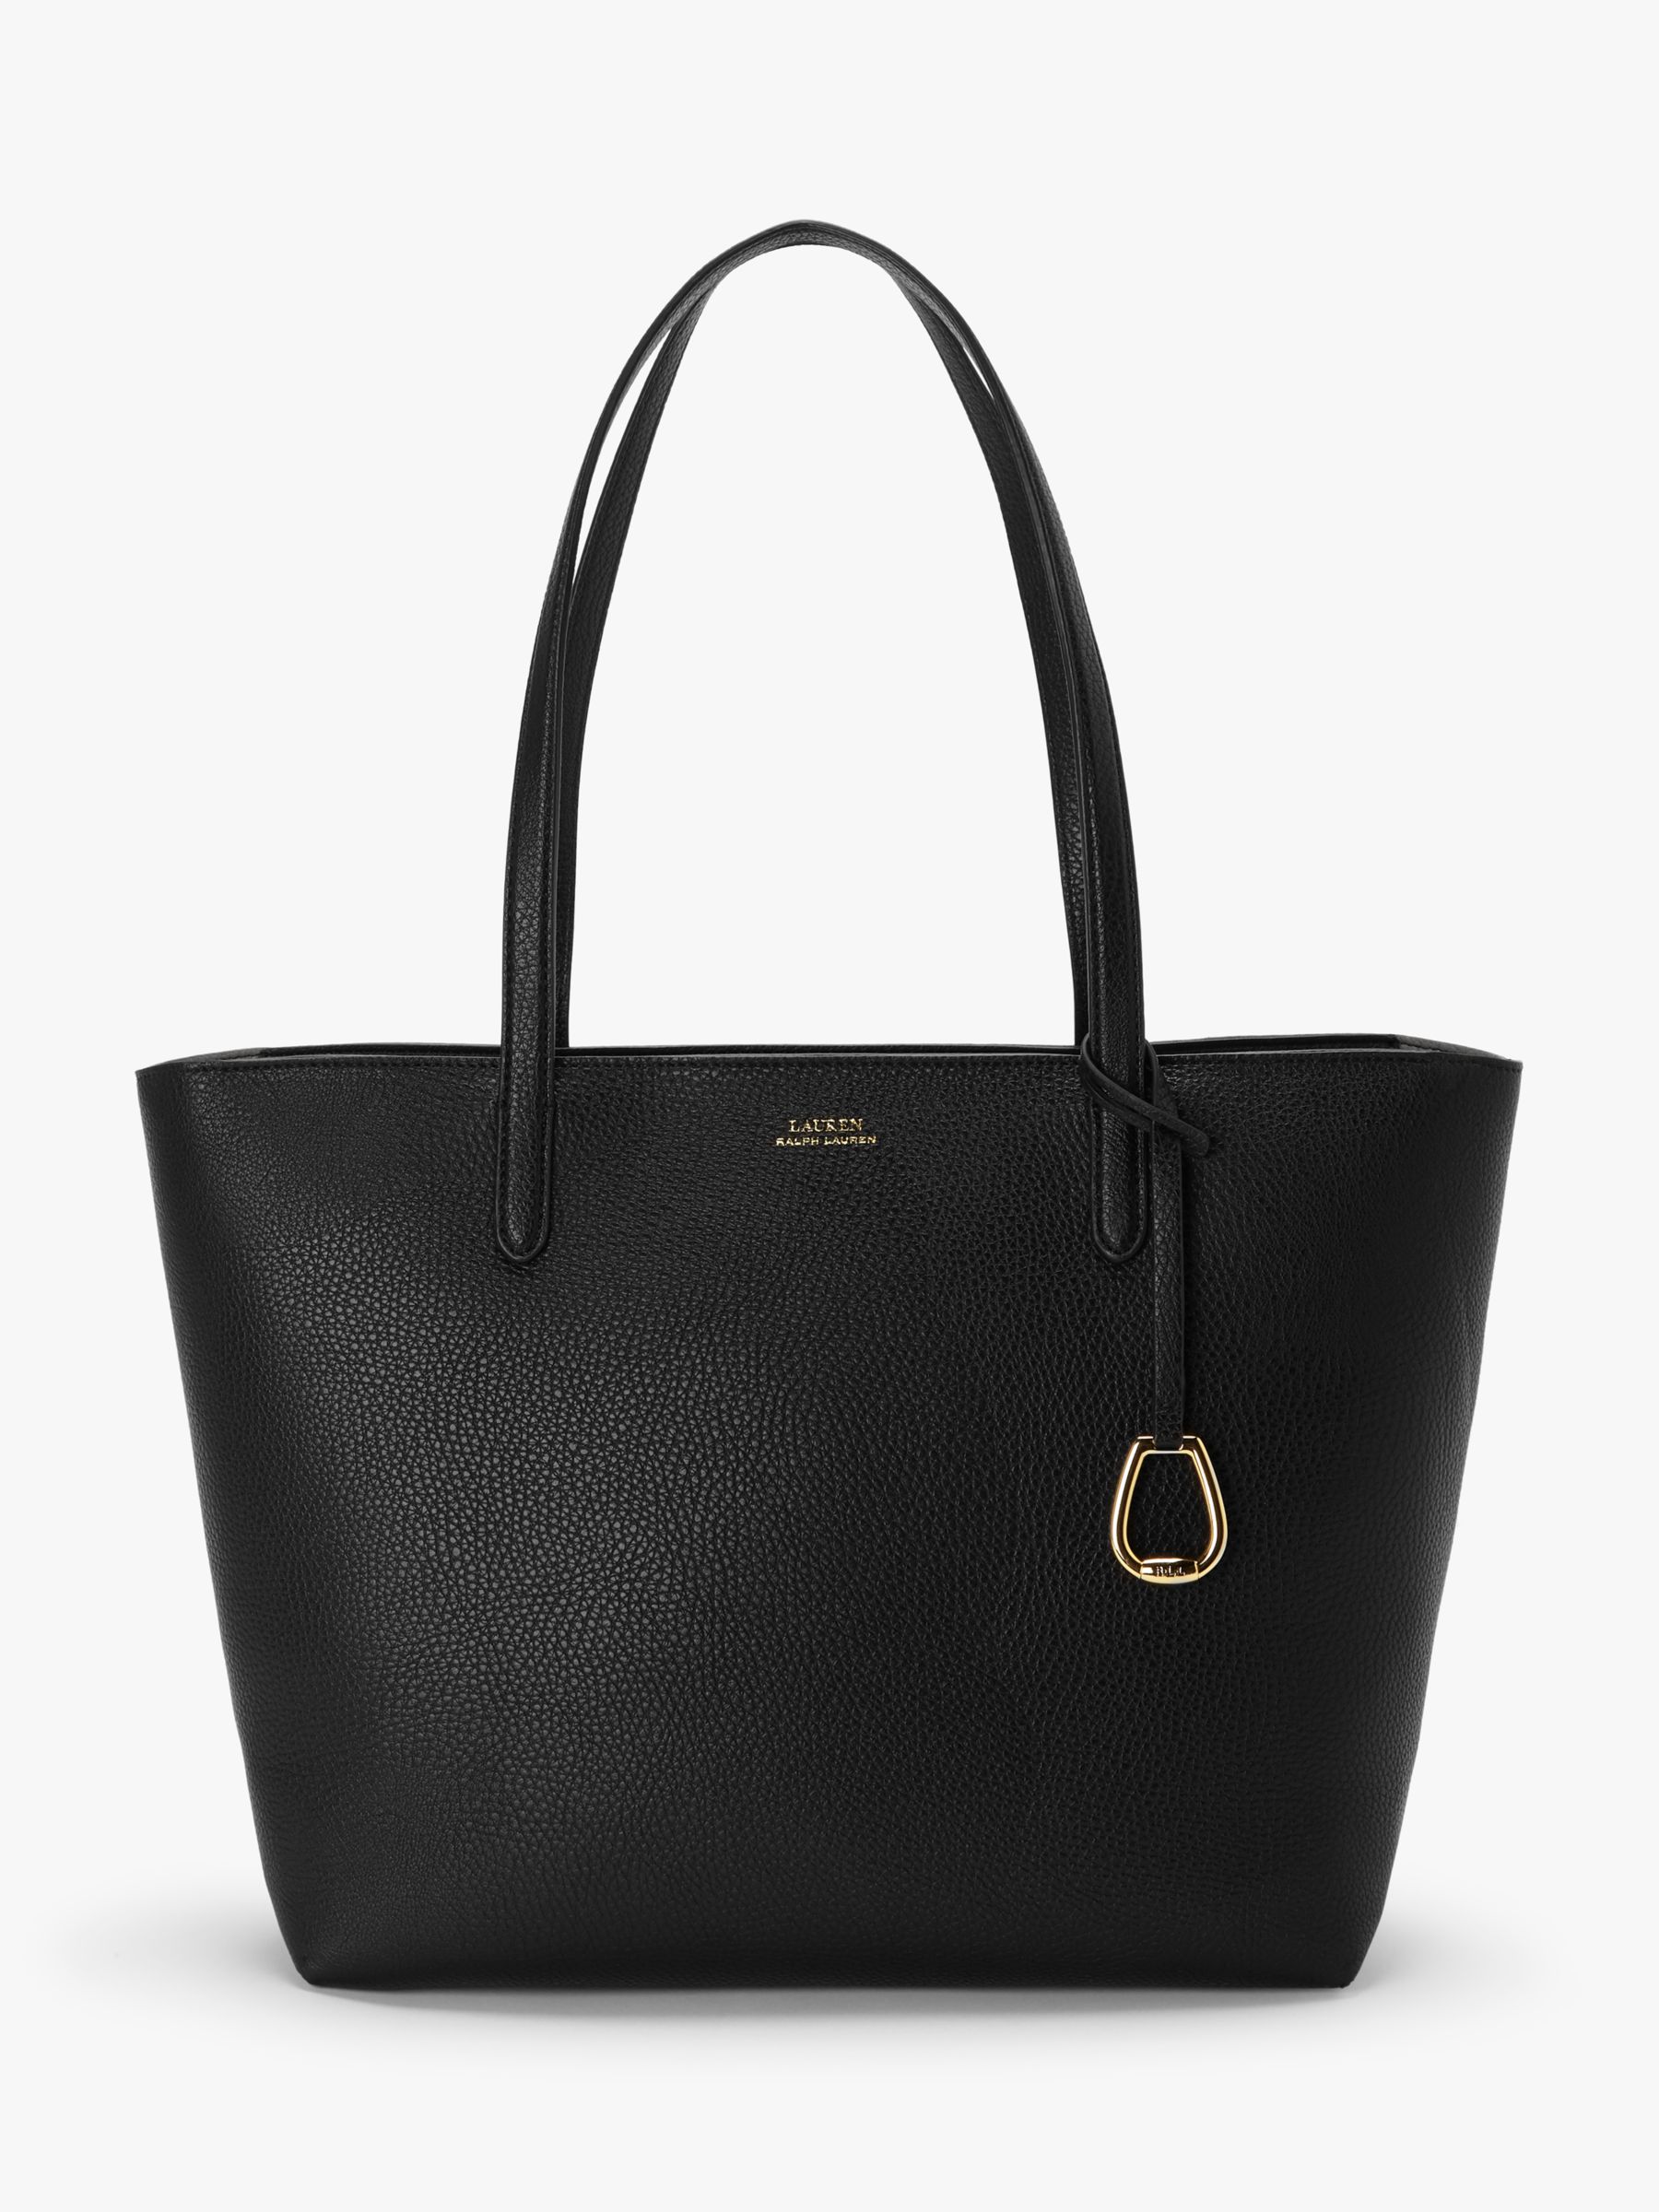 Lauren Ralph Lauren Medium Tote Bag, Black/Taupe at John Lewis & Partners